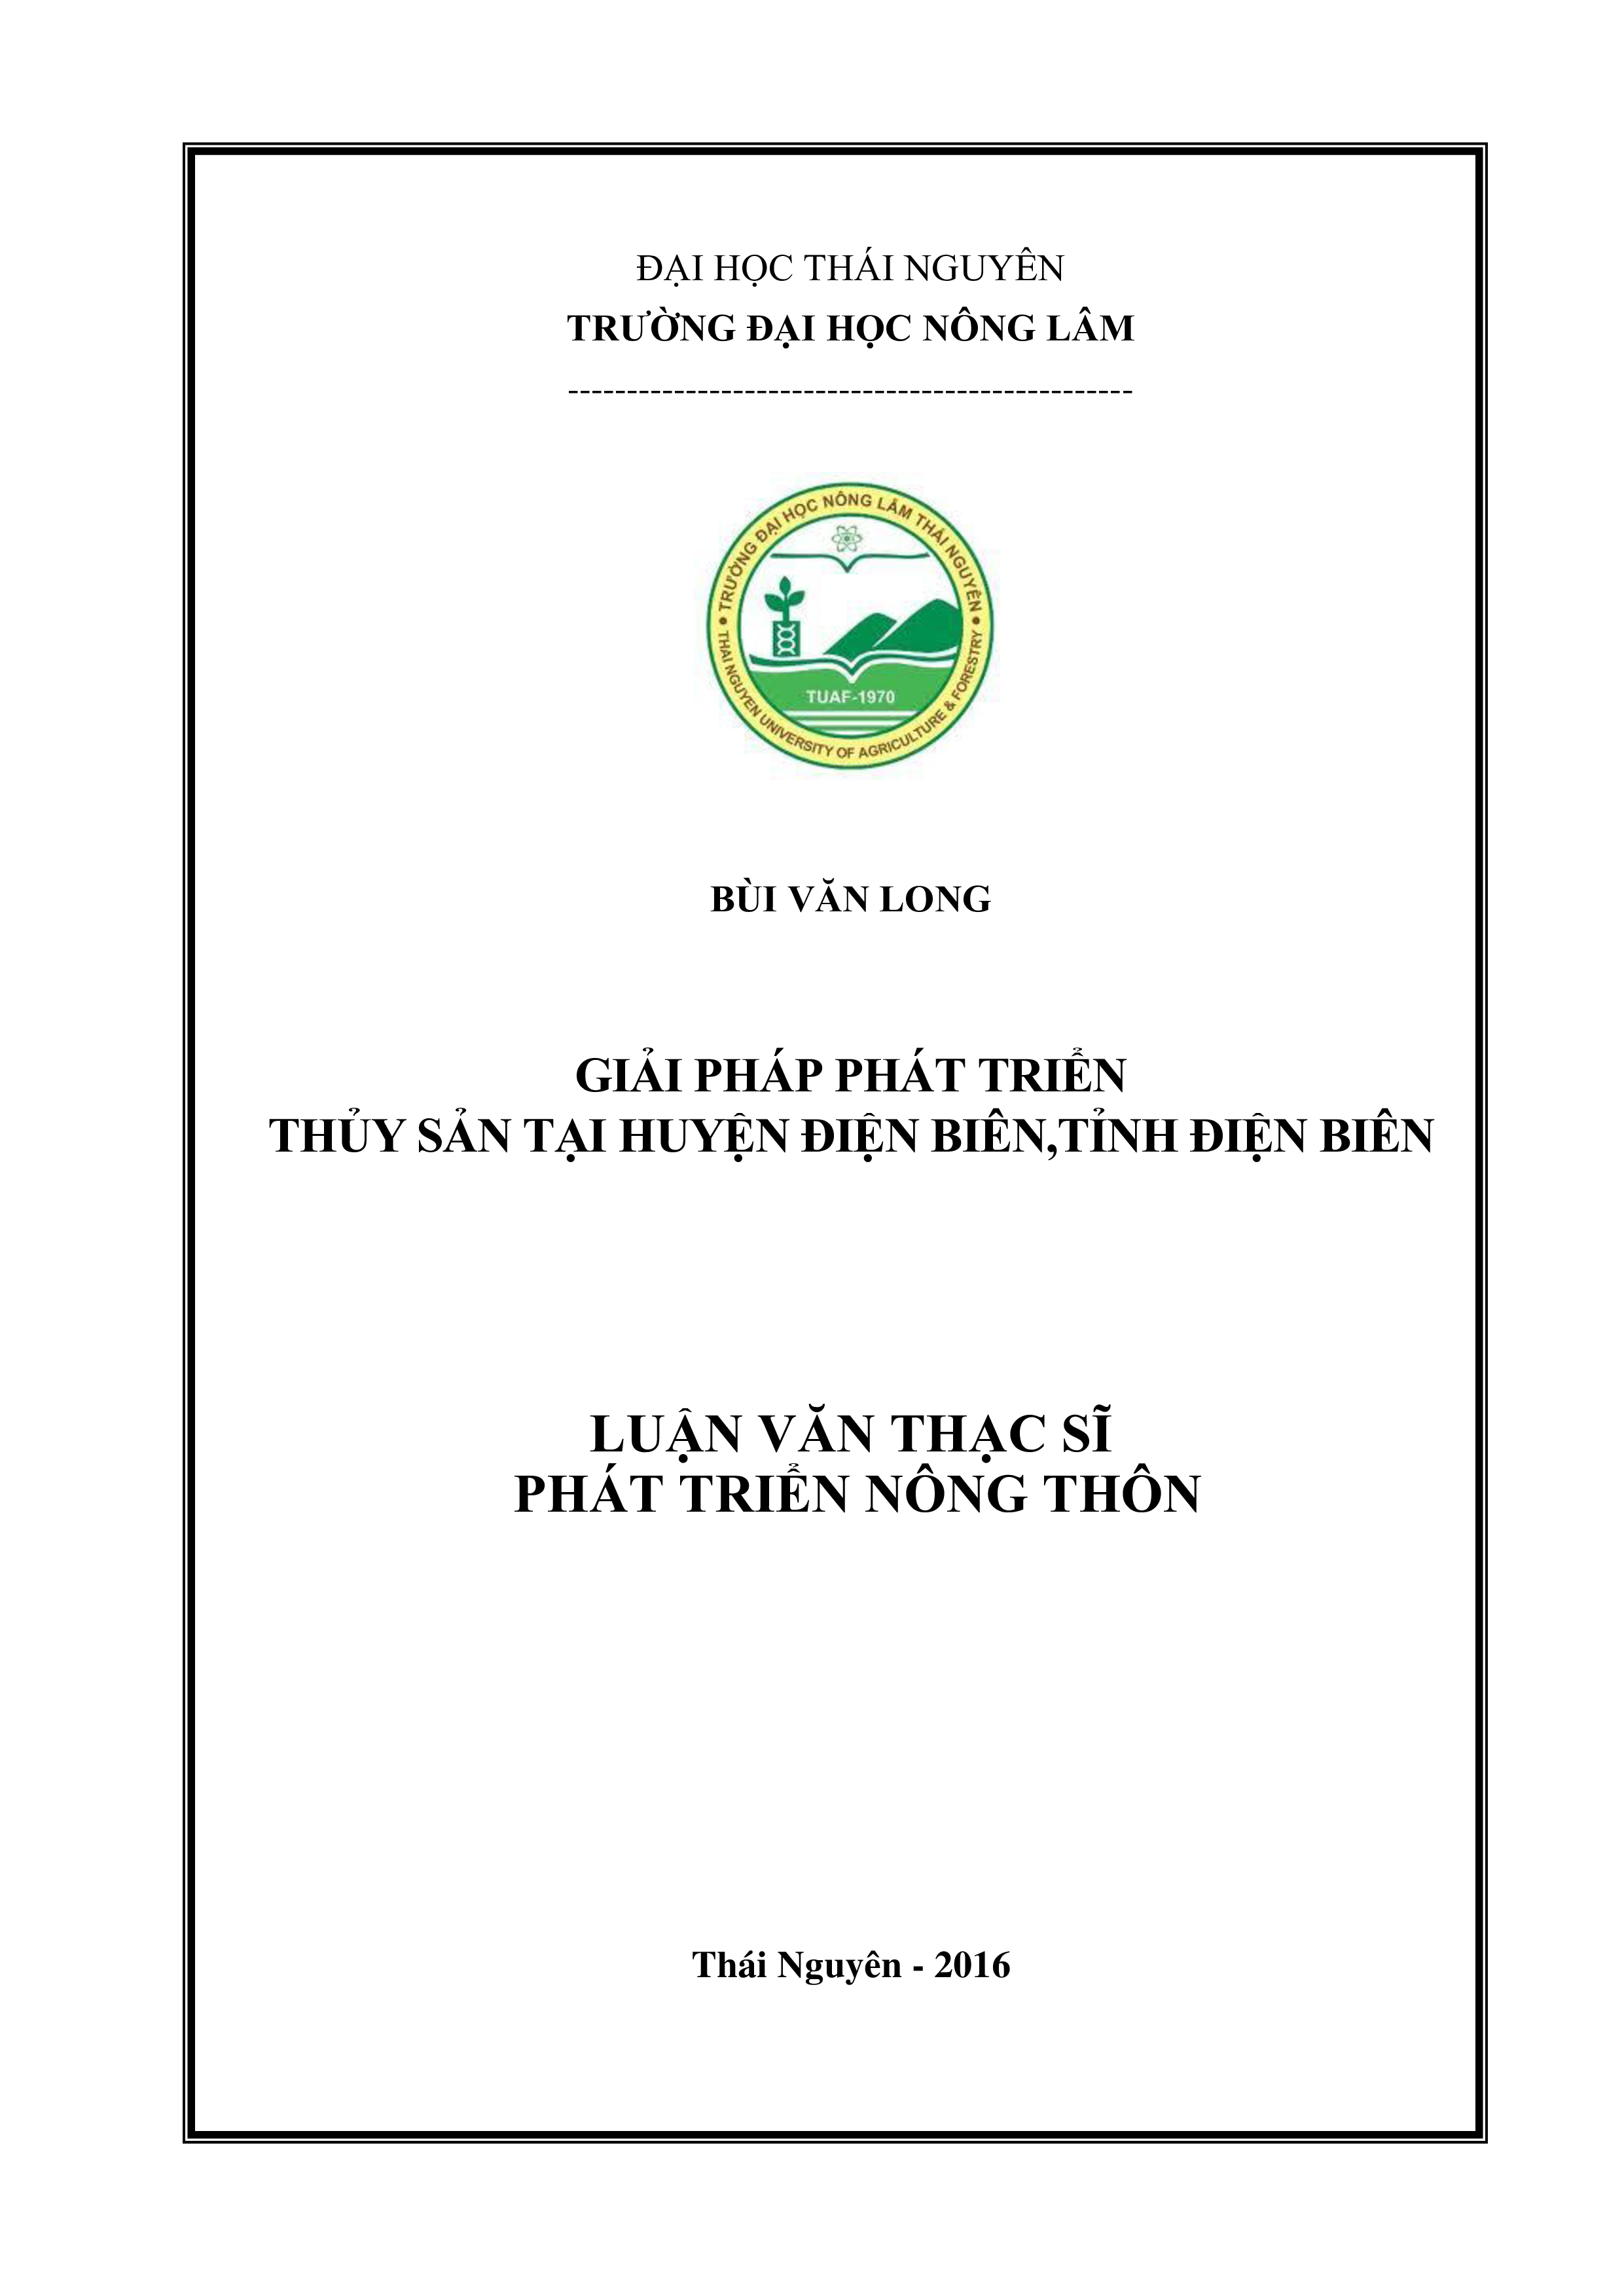 Giải pháp phát triển thuỷ sản tại huyện Điện Biên, tỉnh Điện Biên